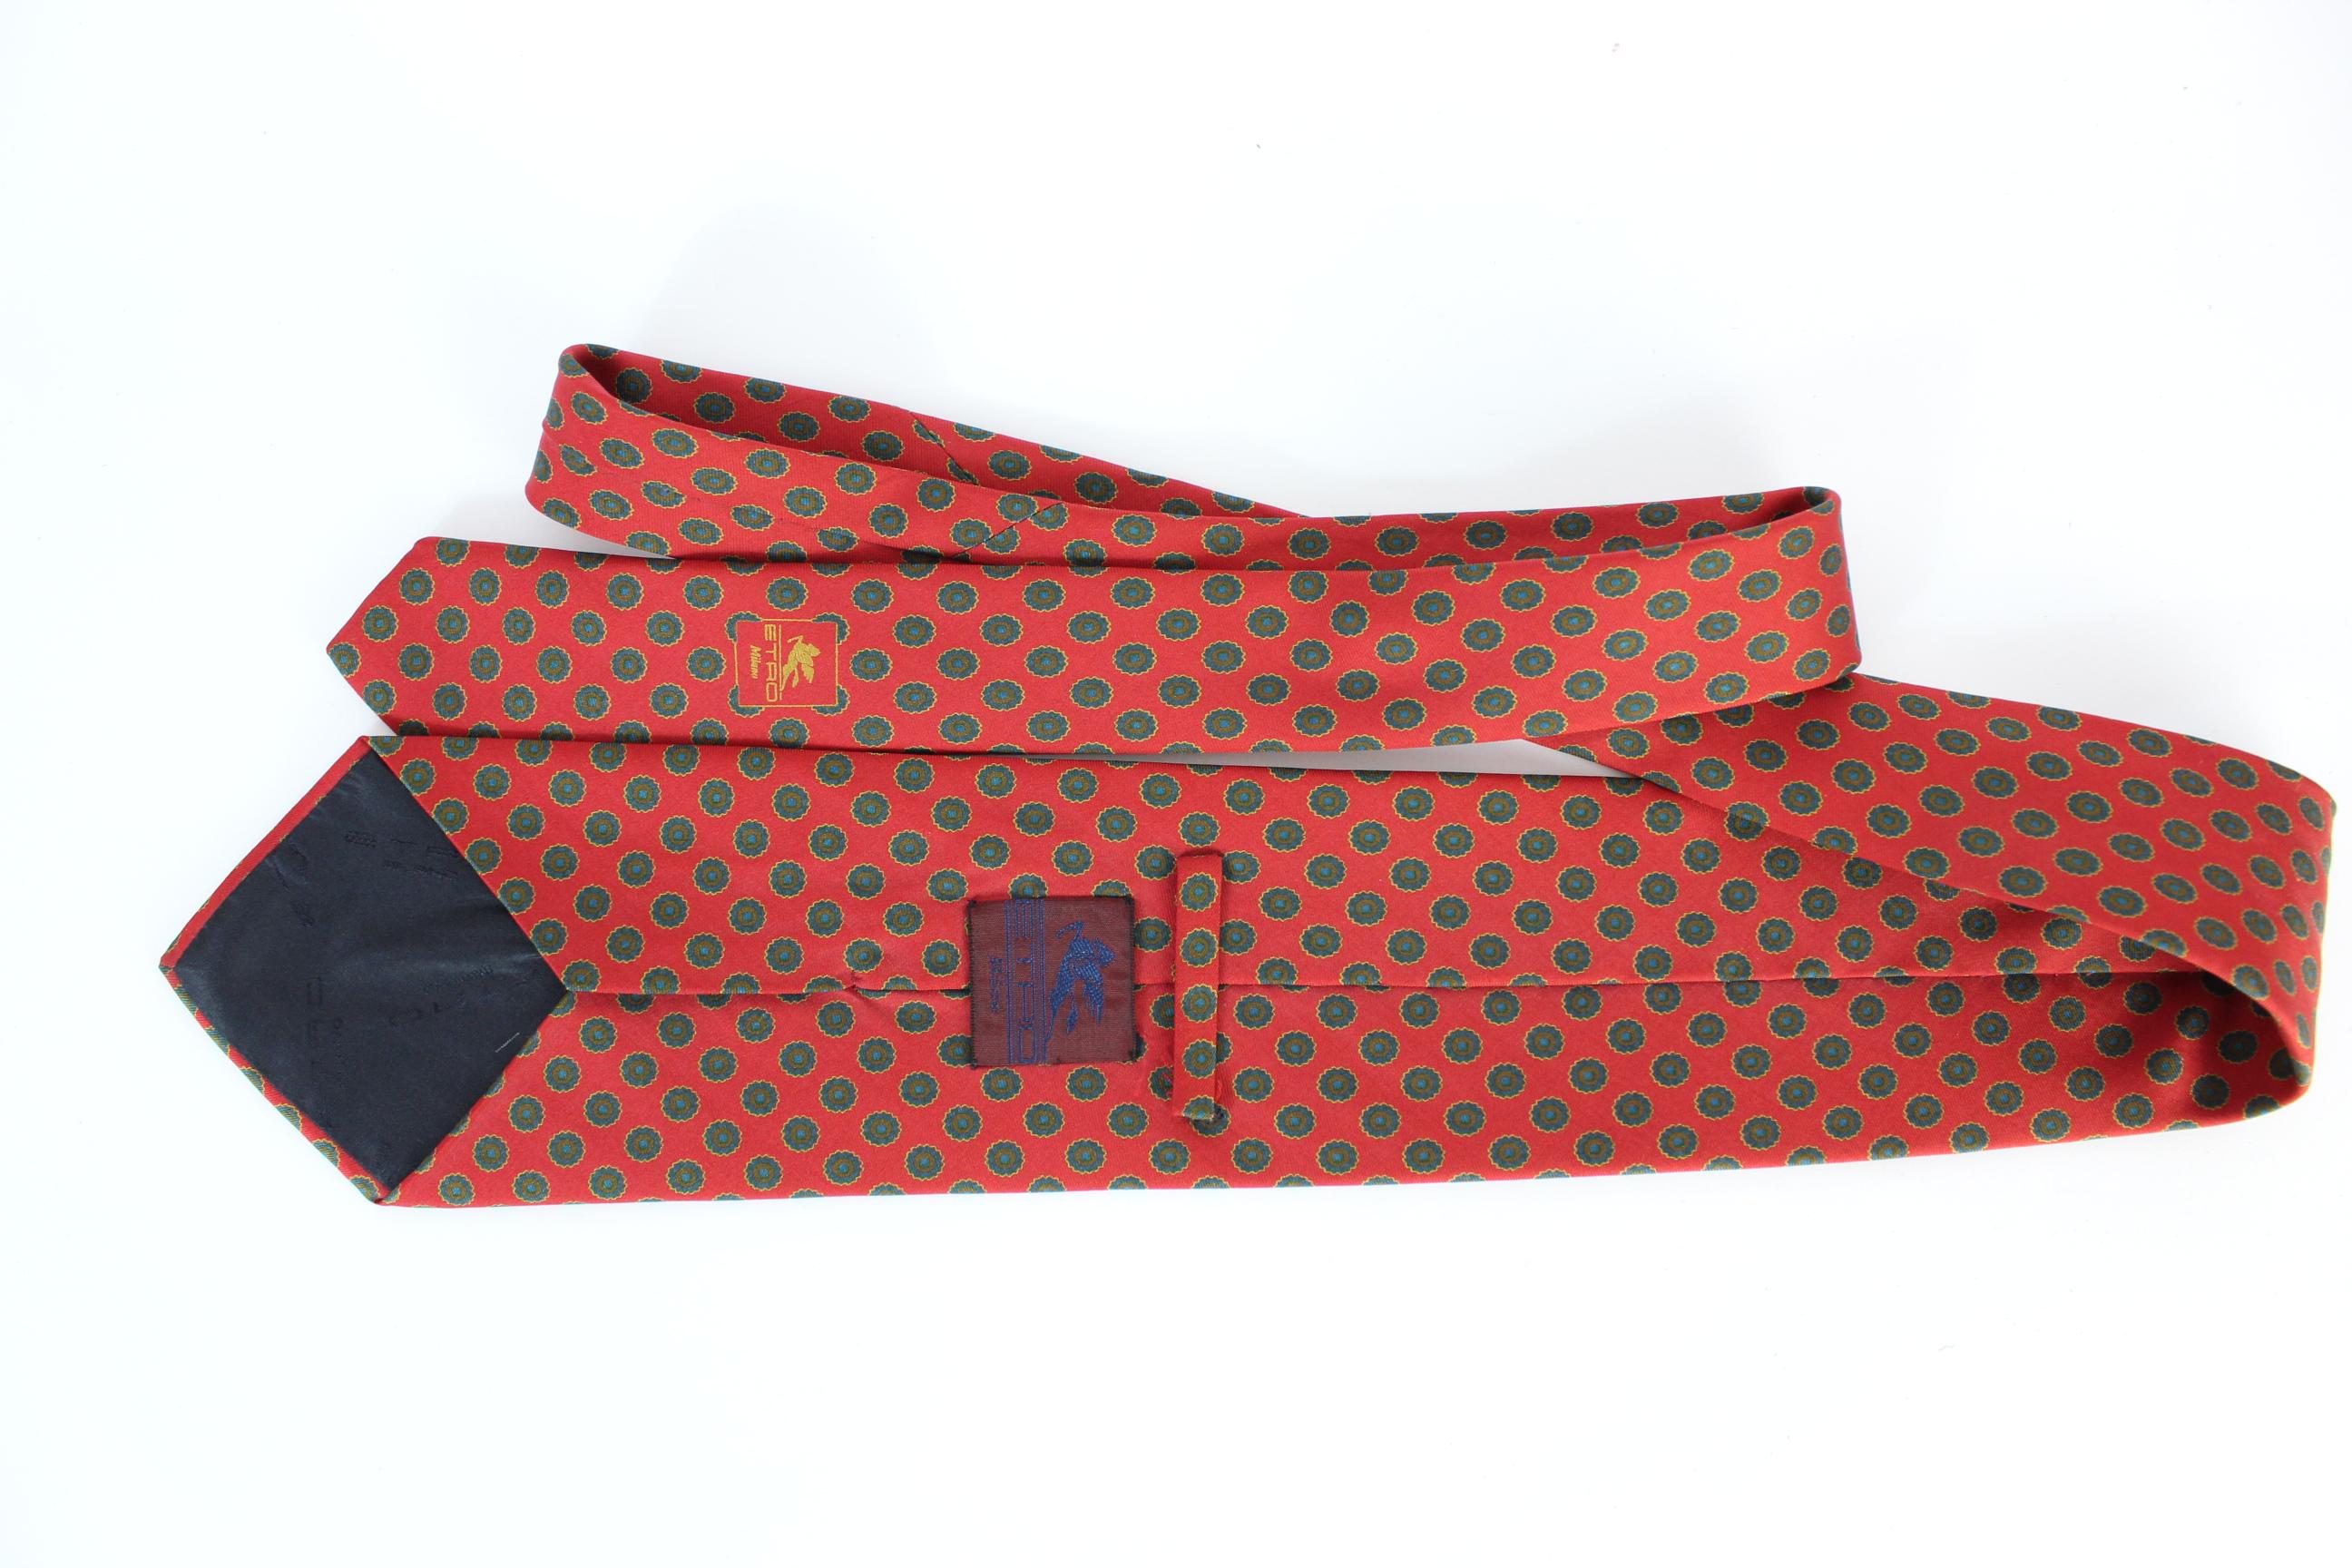 Cravate Etro vintage des années 90. Couleur rouge à pois bleus. 100% soie. Fabriquées en Italie. Excellent état vintage.

Longueur : 150 cm
Largeur : 10 cm